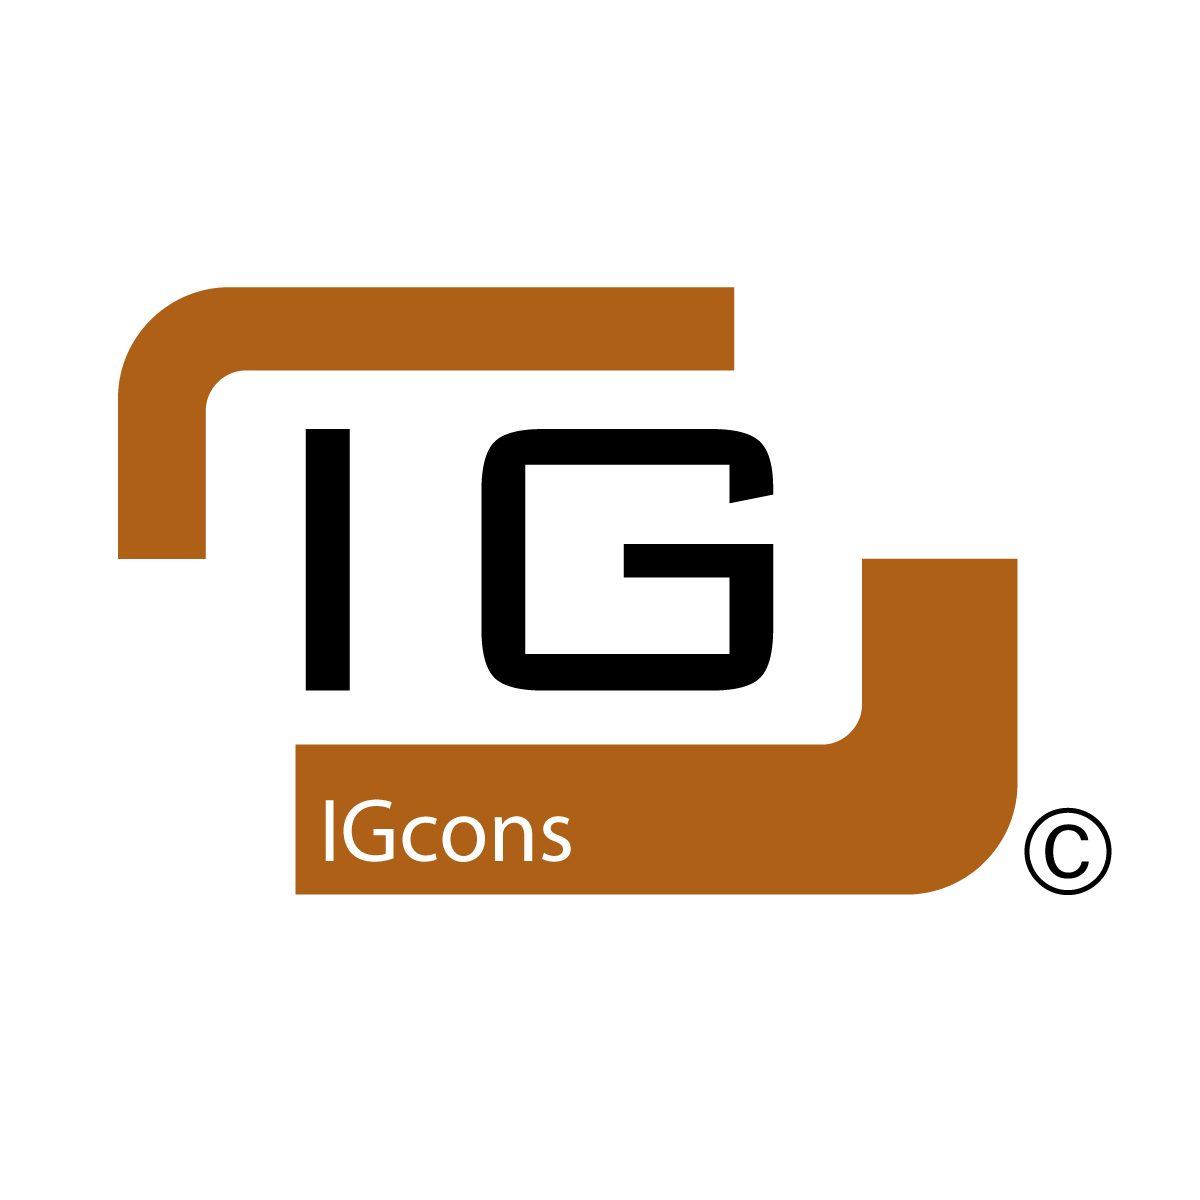 IGcons